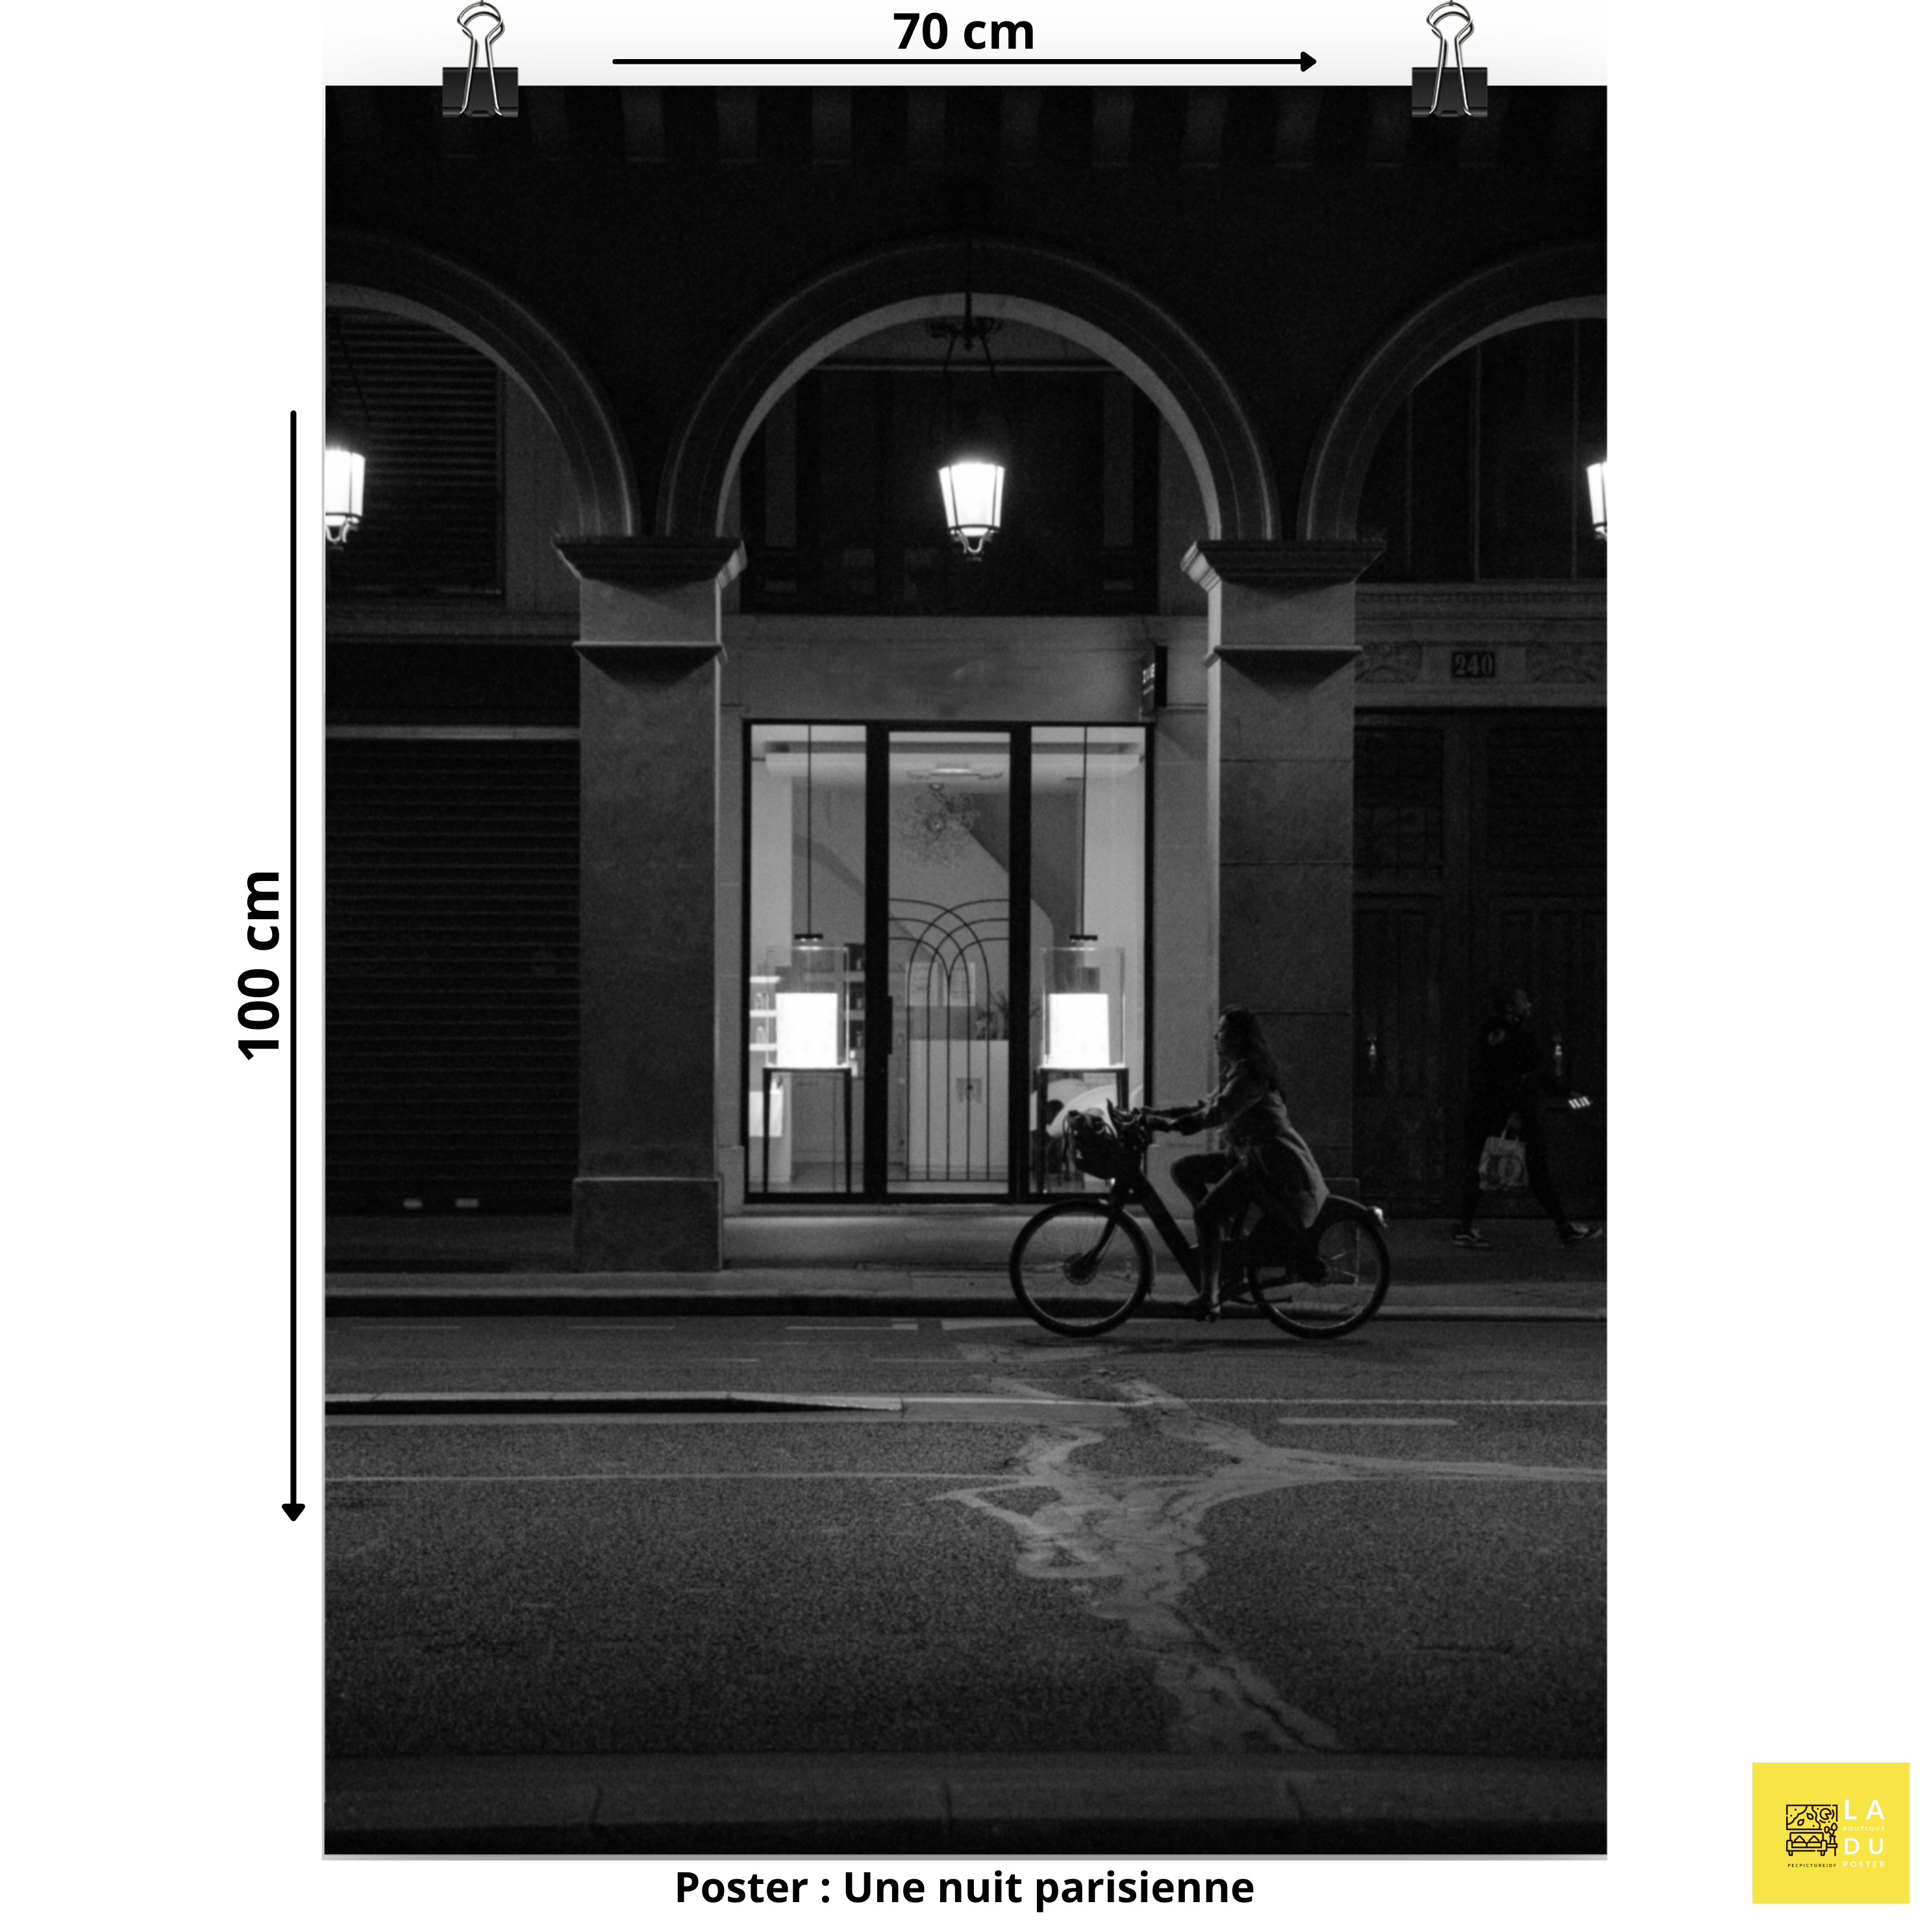 Poster mural - Une nuit parisienne – Photographie de rue en noir et blanc – Poster photo, poster XXL, photographie murale et des posters muraux unique au monde. La boutique de posters créée par Yann Peccard un Photographe français.